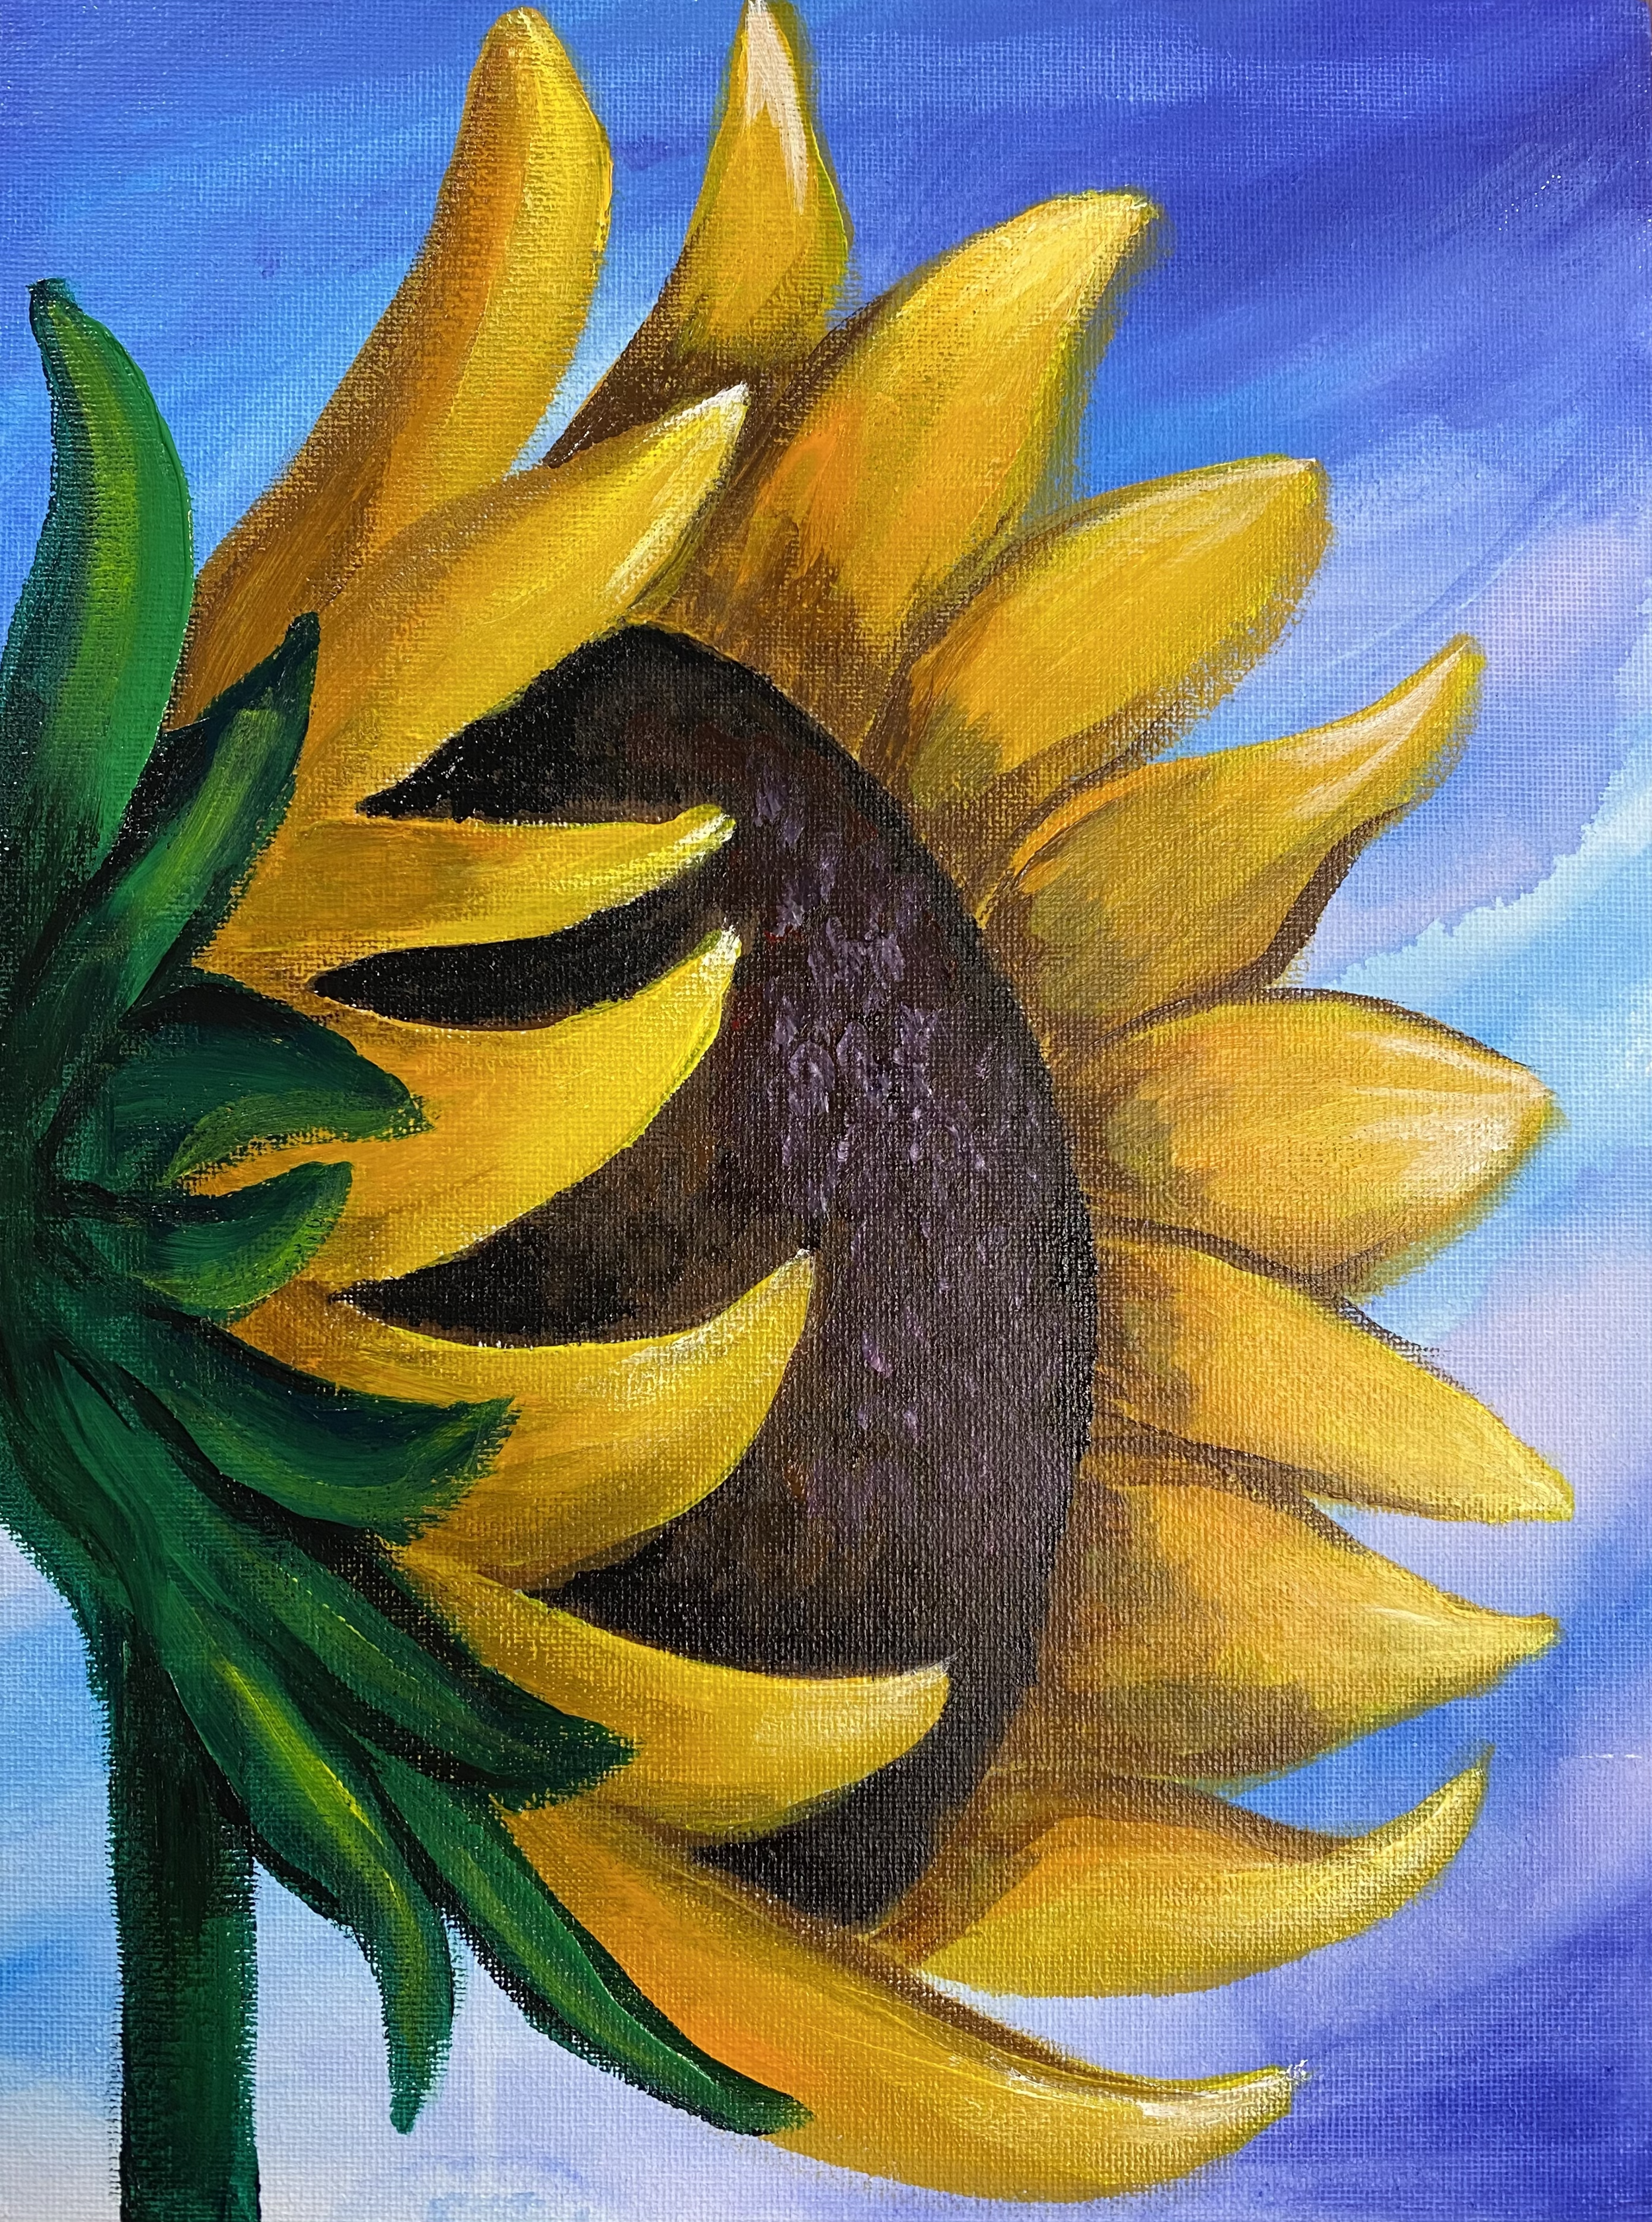 Little Sunflower